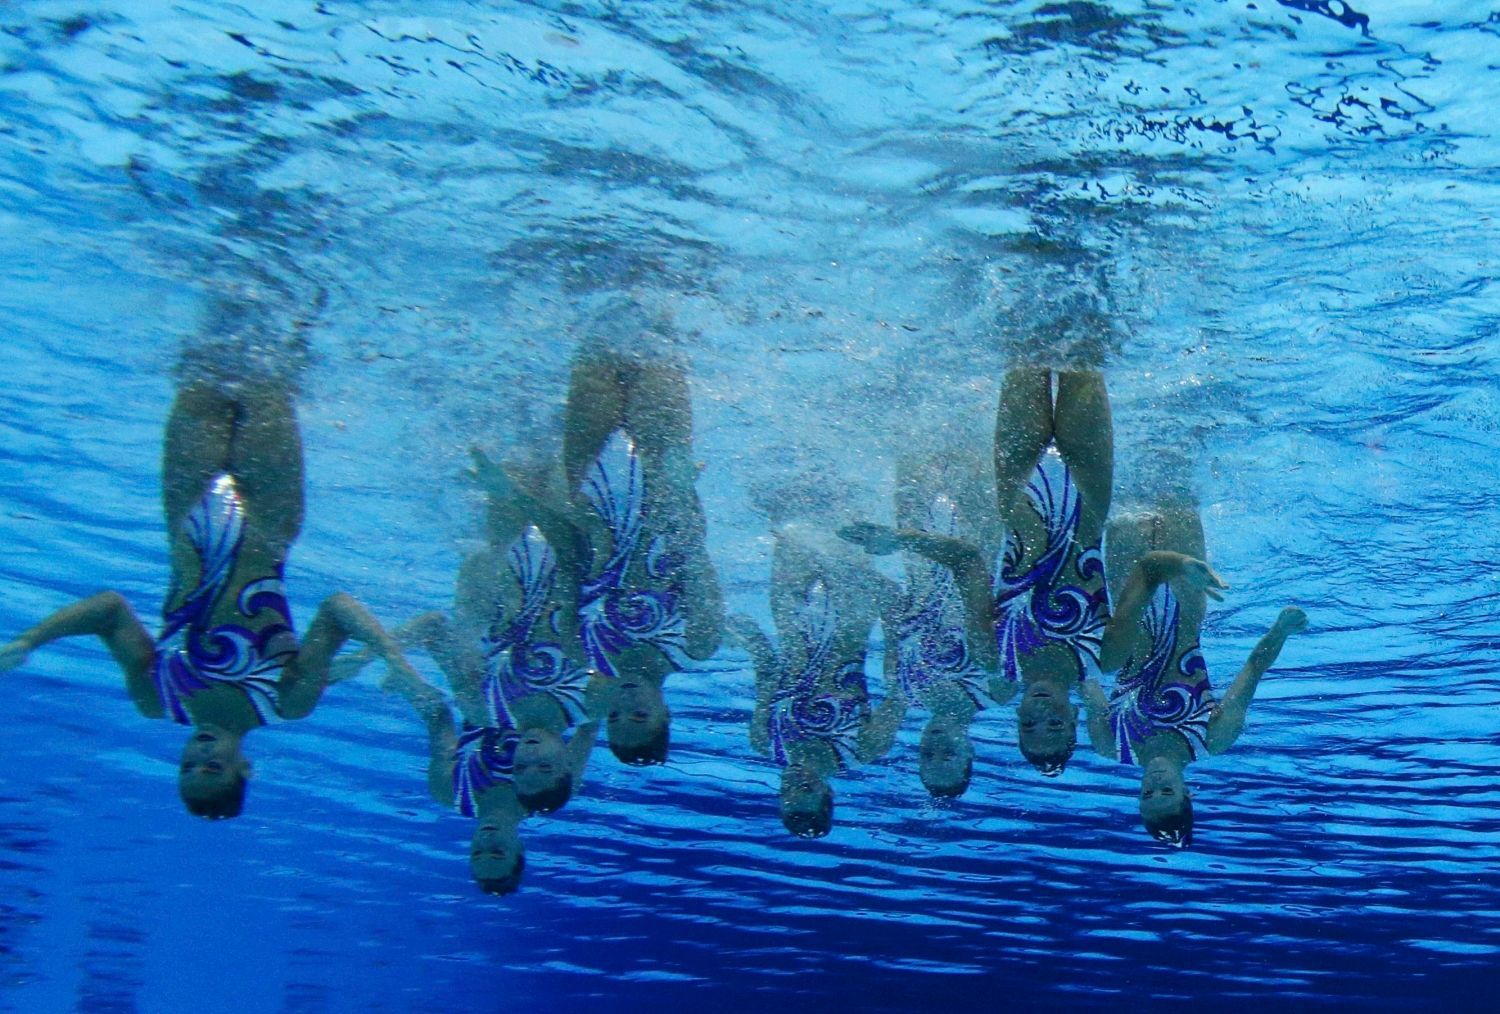 Synchronizované plavání na OH 2012 v Londýně.